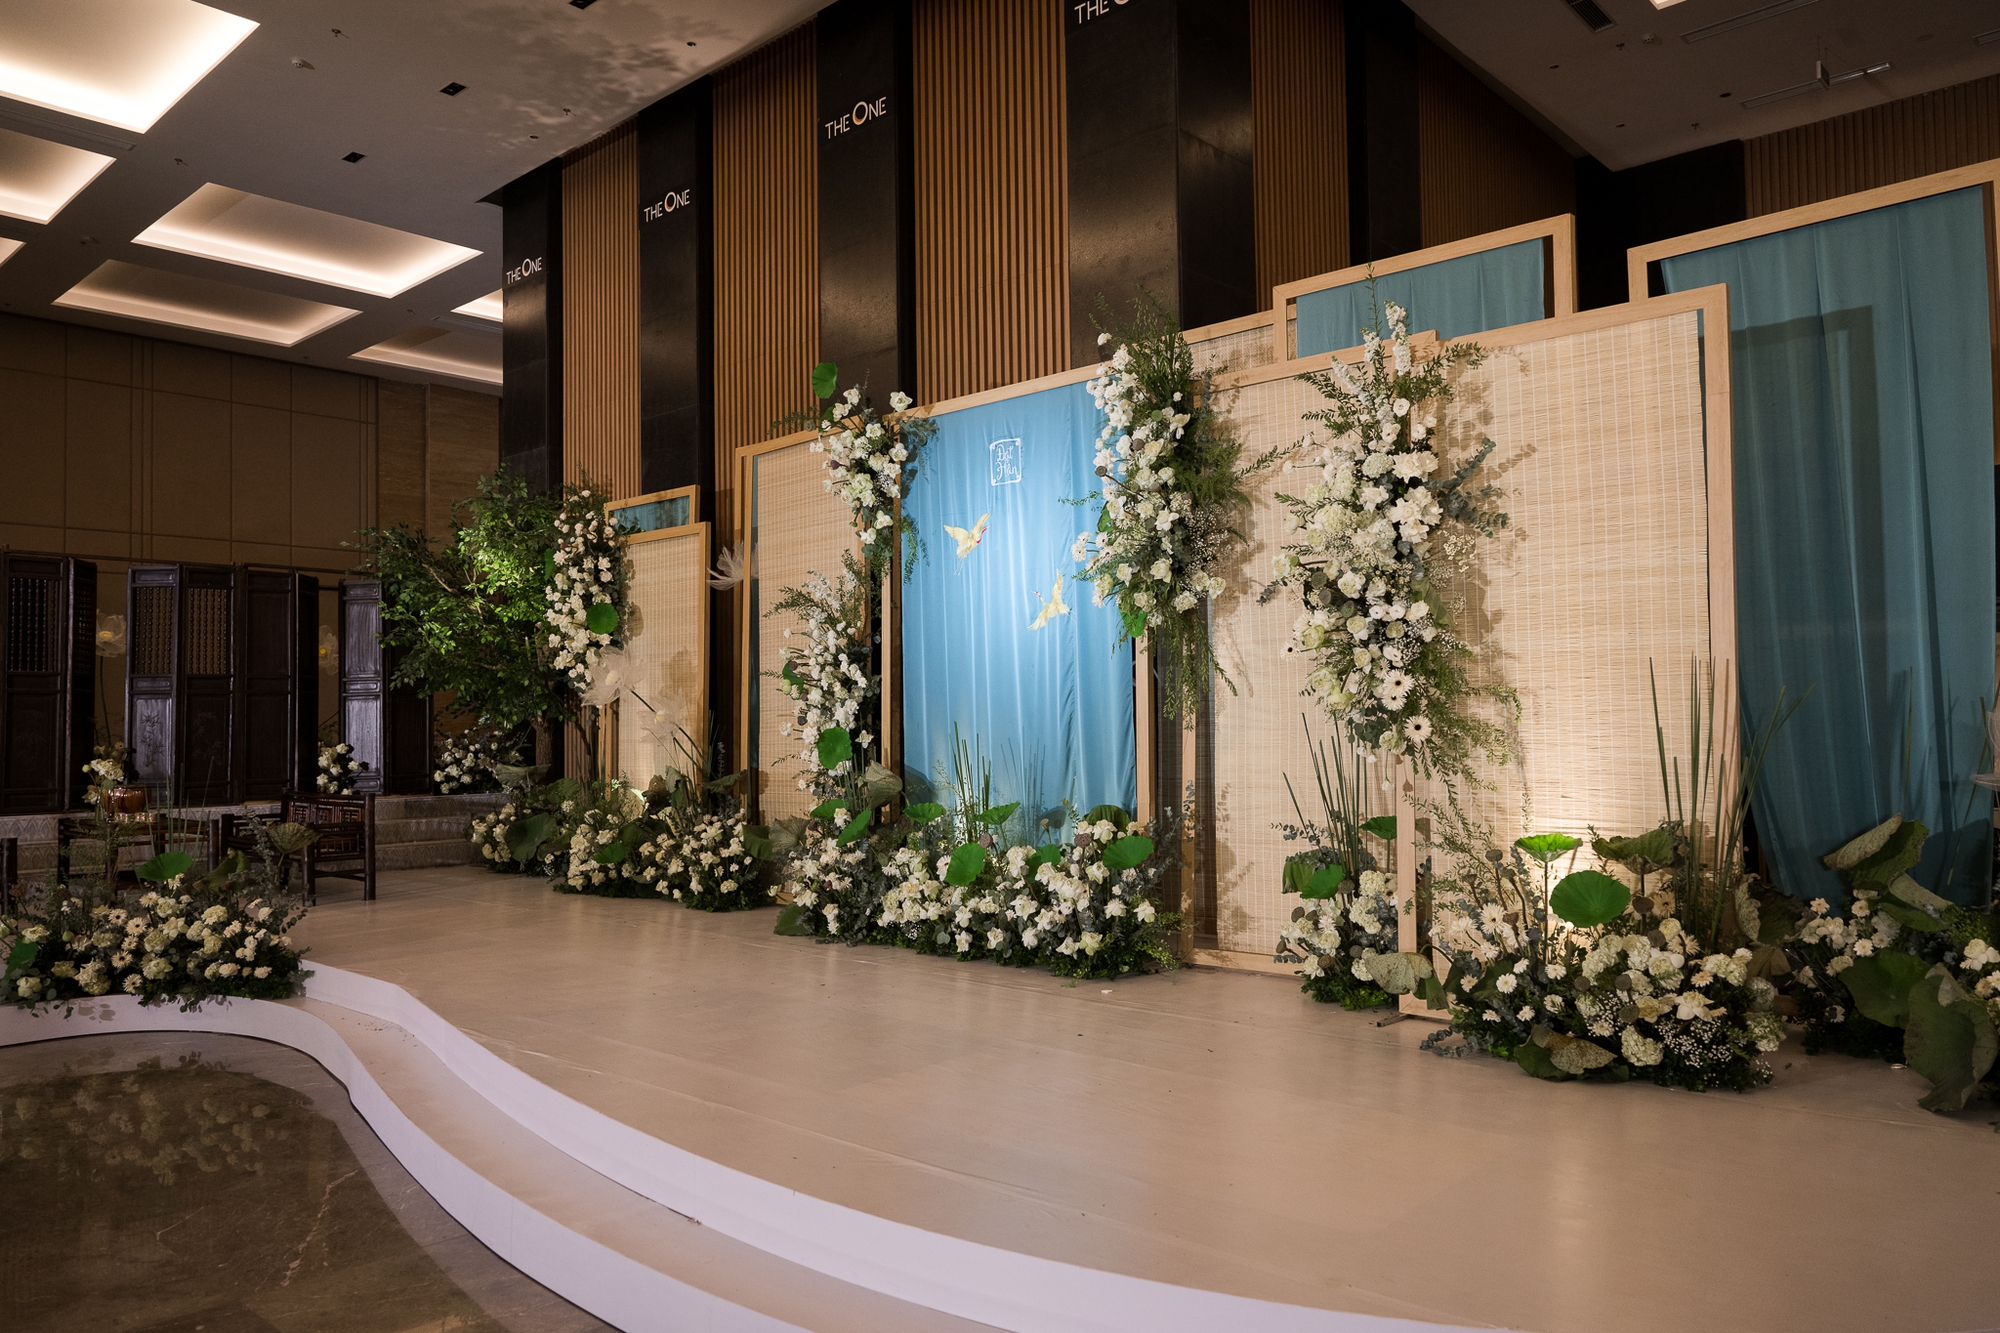 Lễ cưới của Hoa hậu Ngọc Hân: Cô dâu được chồng tặng quà bí mật, dàn mỹ nhân đổ bộ giữa không gian đẹp như mơ - Ảnh 3.